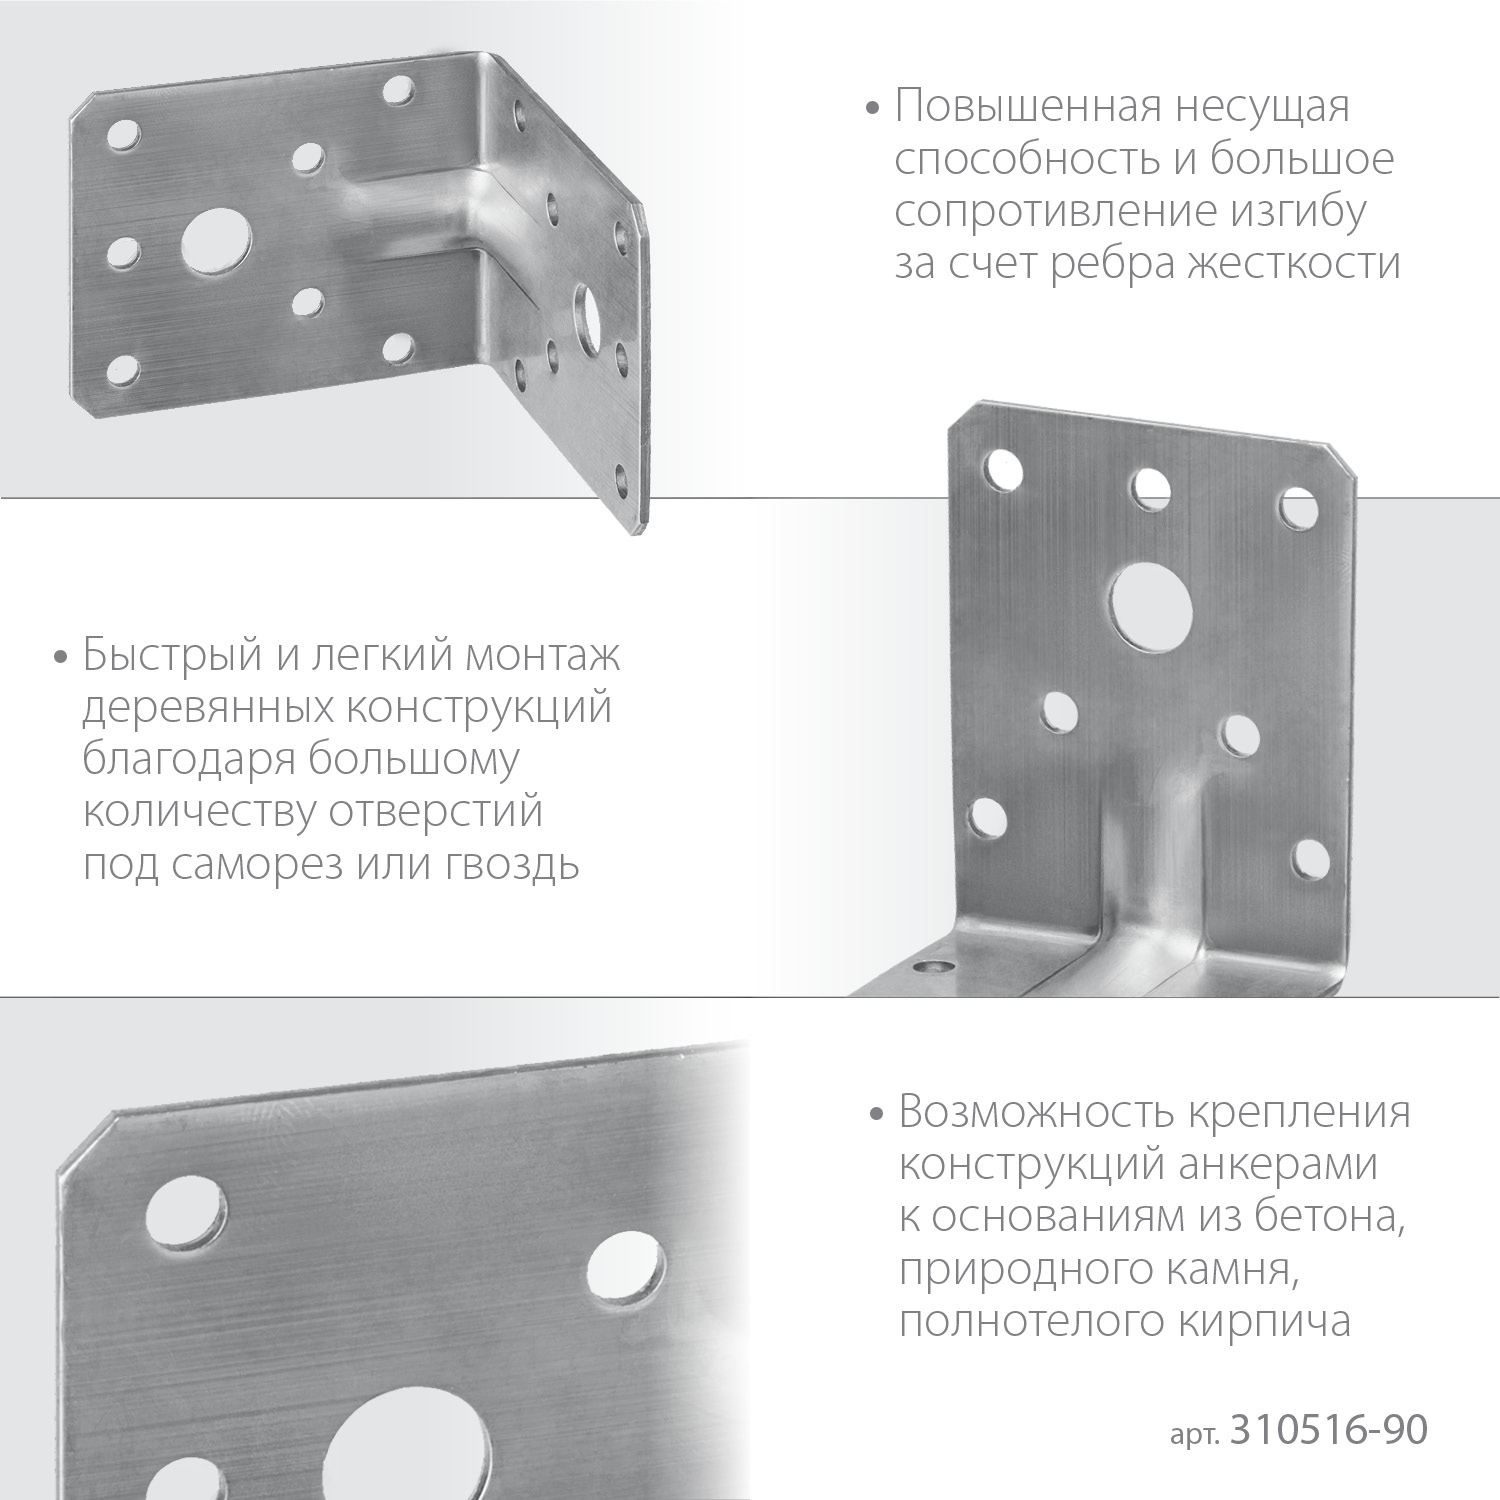 ЗУБР УНКУ-2.0, 90 x 100 x 100 x 2 мм, усиленный нержавеющий крепежный уголок, Профессионал (310516-90)